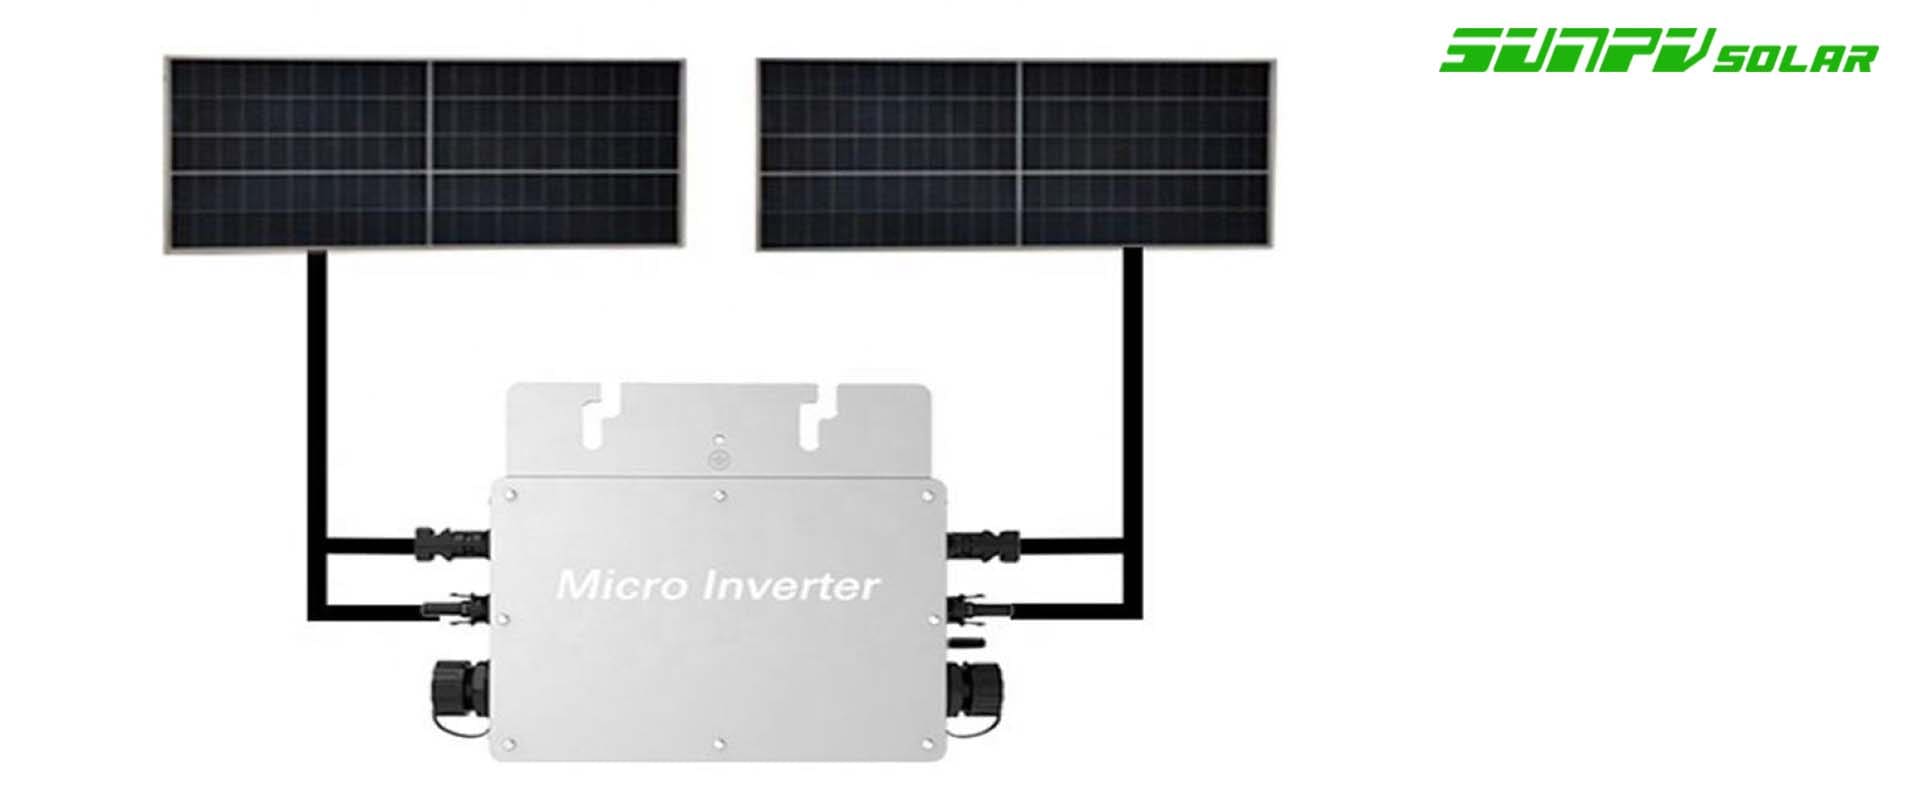 Solar micro inverter 300w 500w 600w 800w 1000w 1200w 1500w 1800w 2000w 2400w 2800w gird wifi app